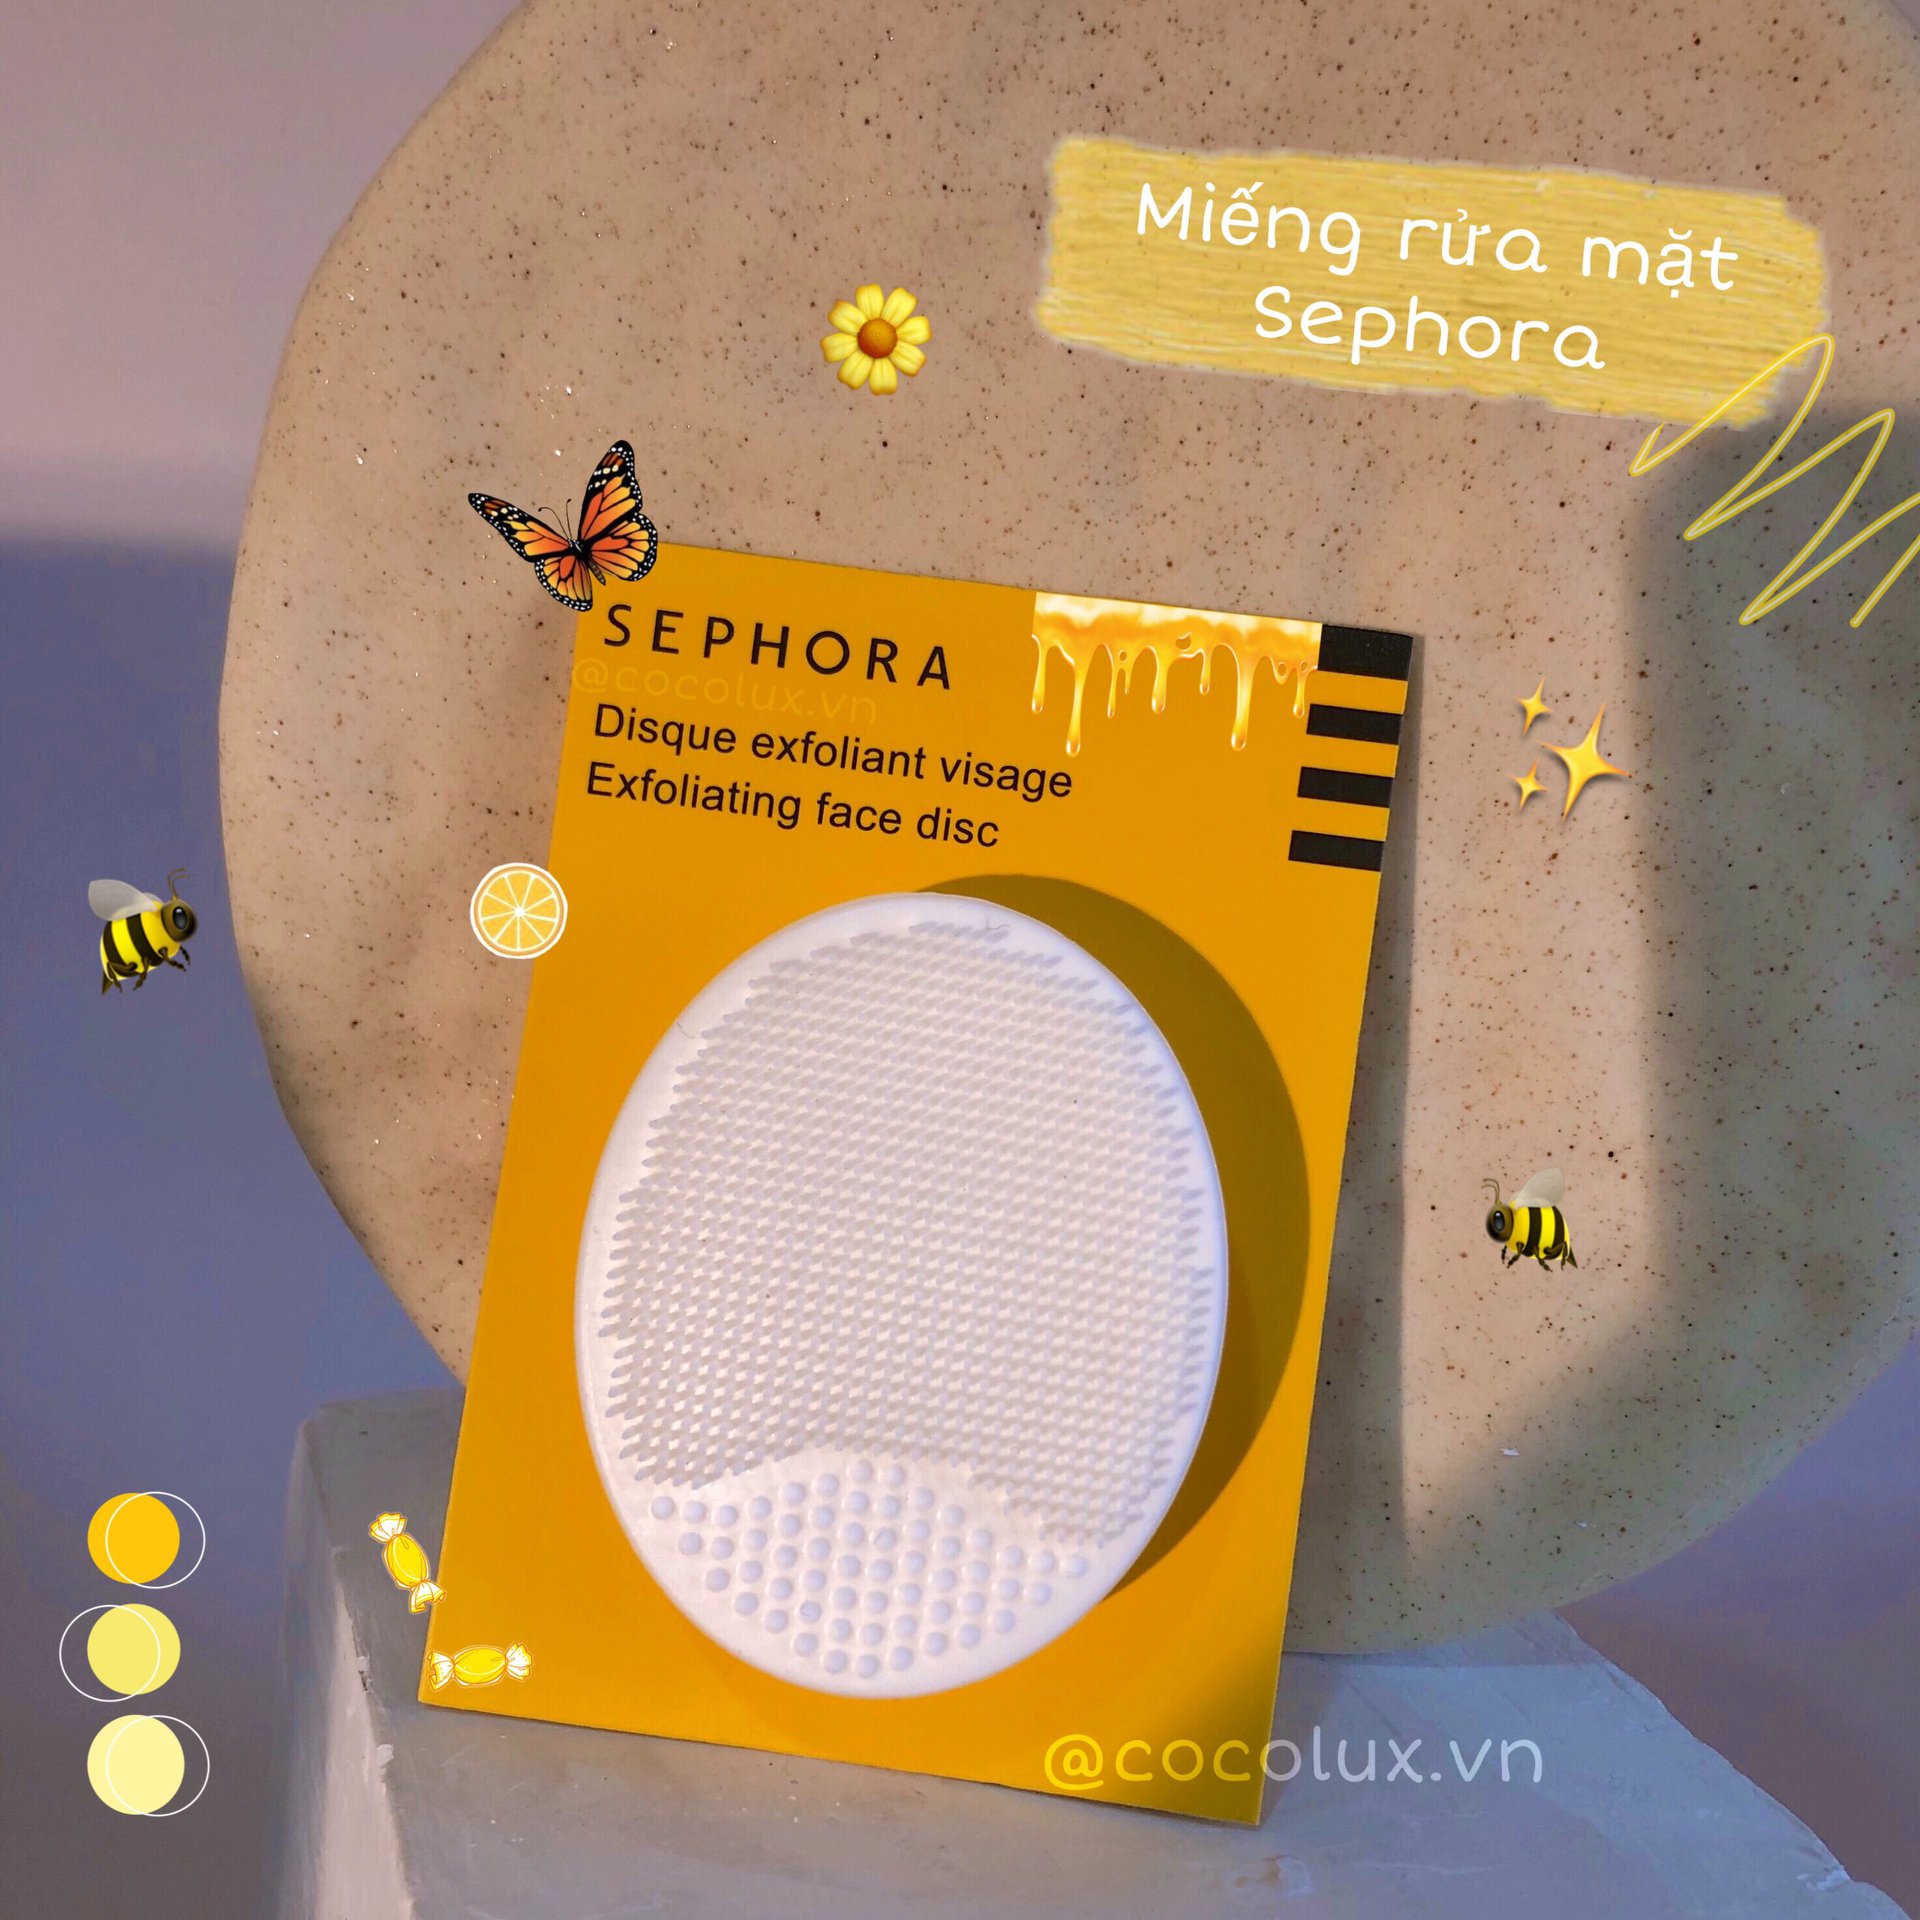 Miếng Rửa Mặt Silicone Sephora